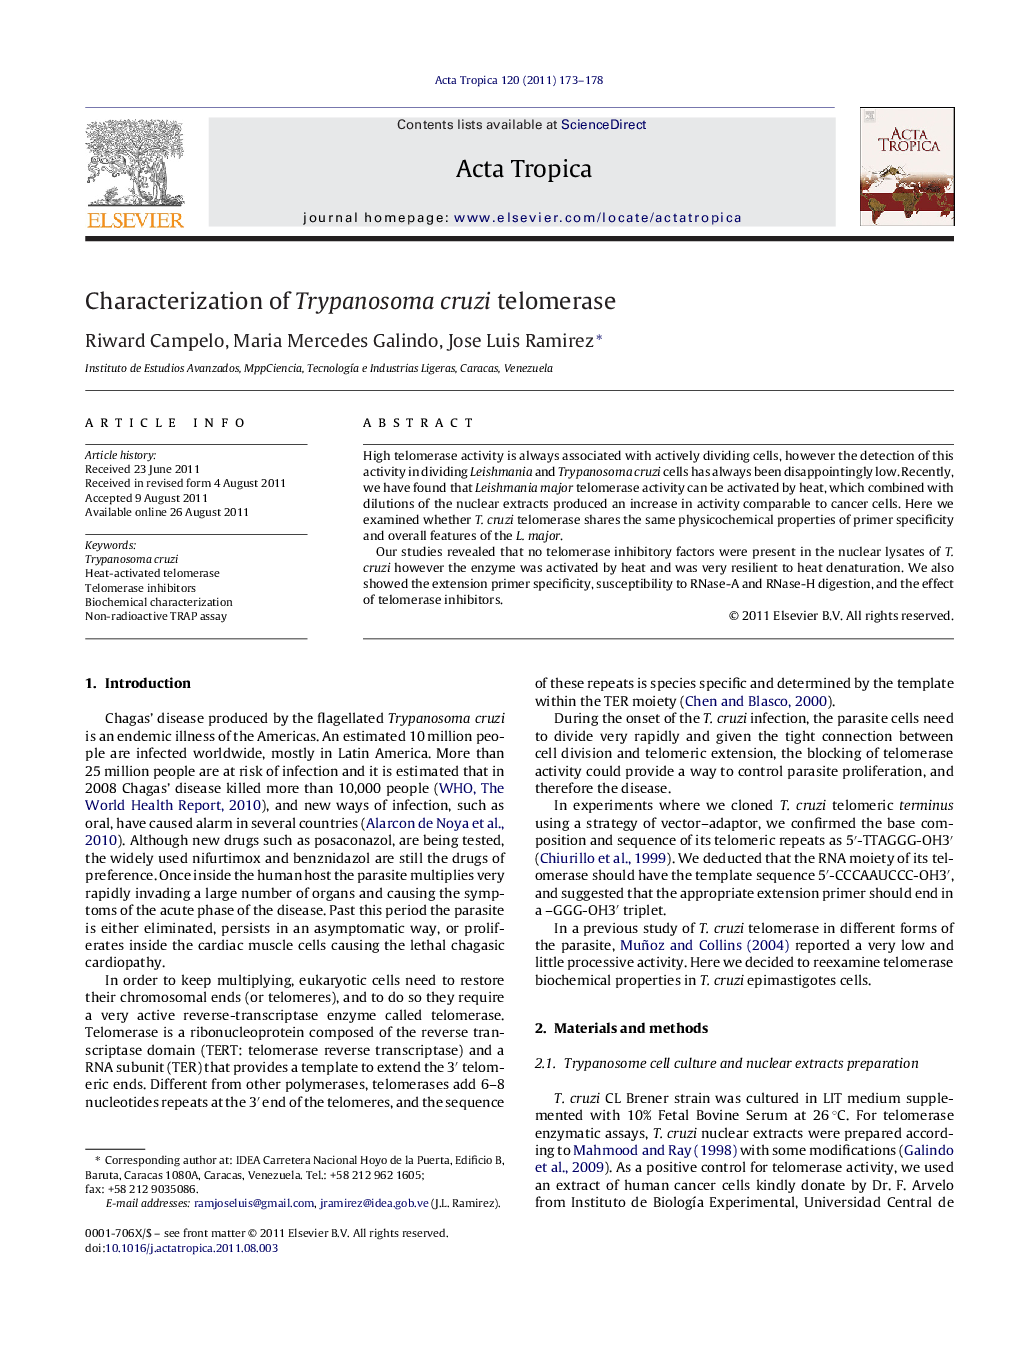 Characterization of Trypanosoma cruzi telomerase